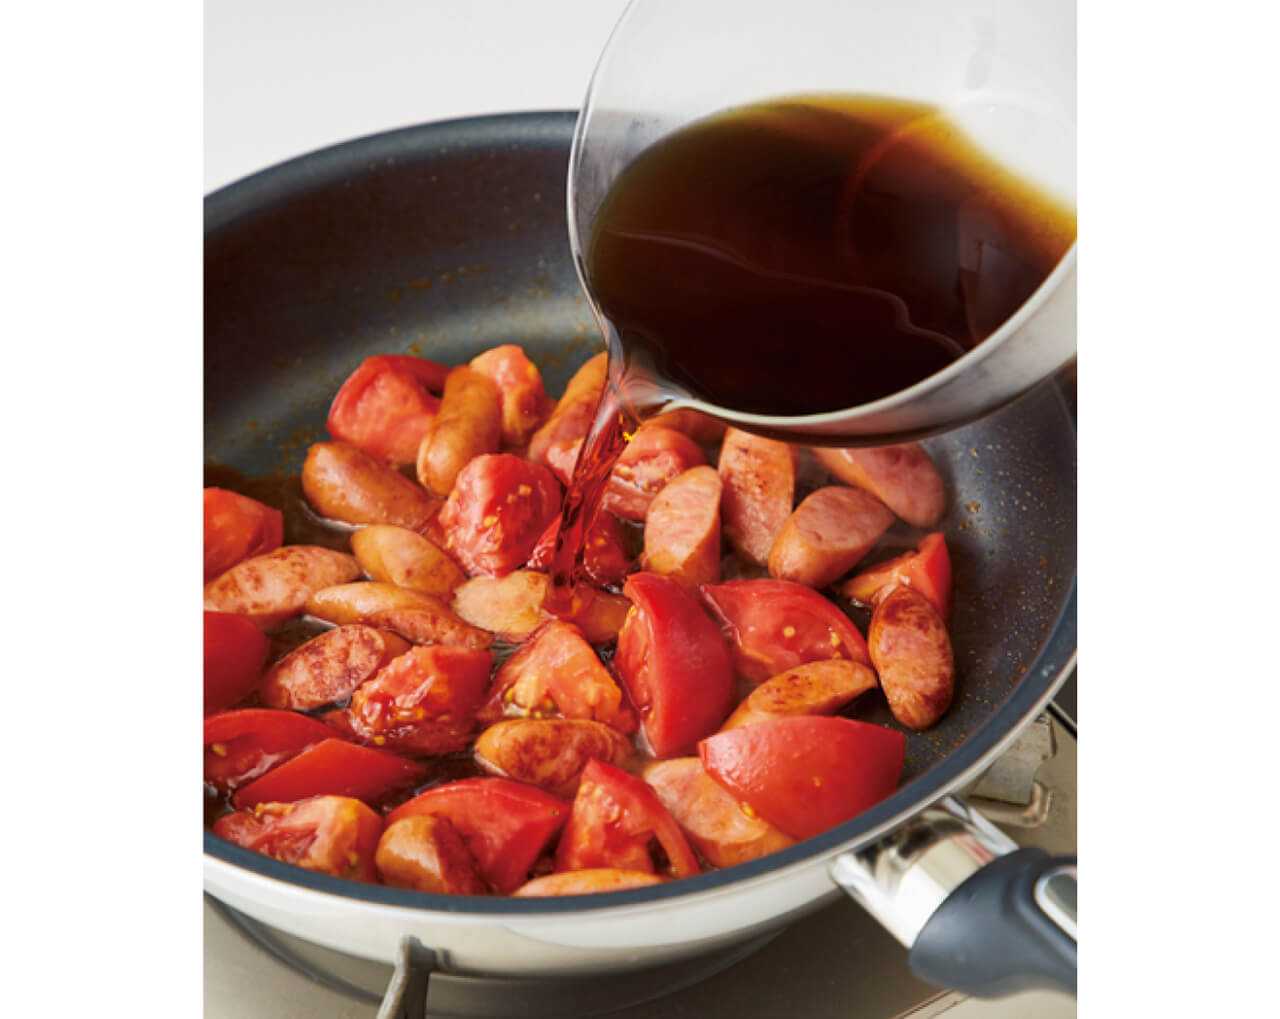 トマトとソーセージの炒め具合が最大のポイント。トマトの皮が少し縮んで果汁が出かかるくらいまで炒めて、めんつゆを投入